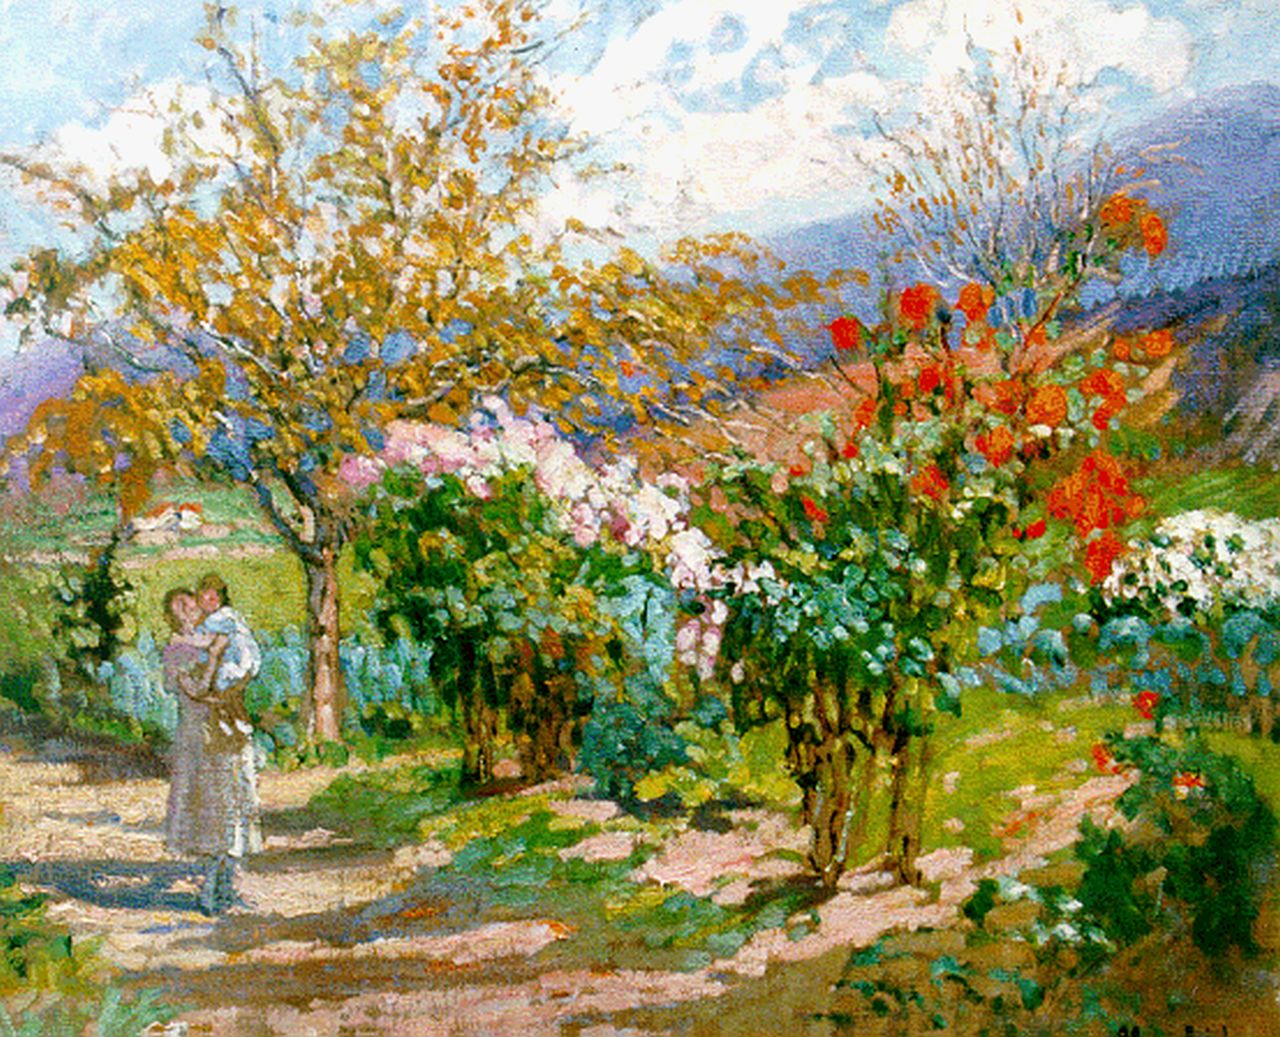 Réol M.M.  | Marie Marguérite Réol, Le pied de dahlias roses, oil on canvas 60.0 x 73.0 cm, signed l.r.